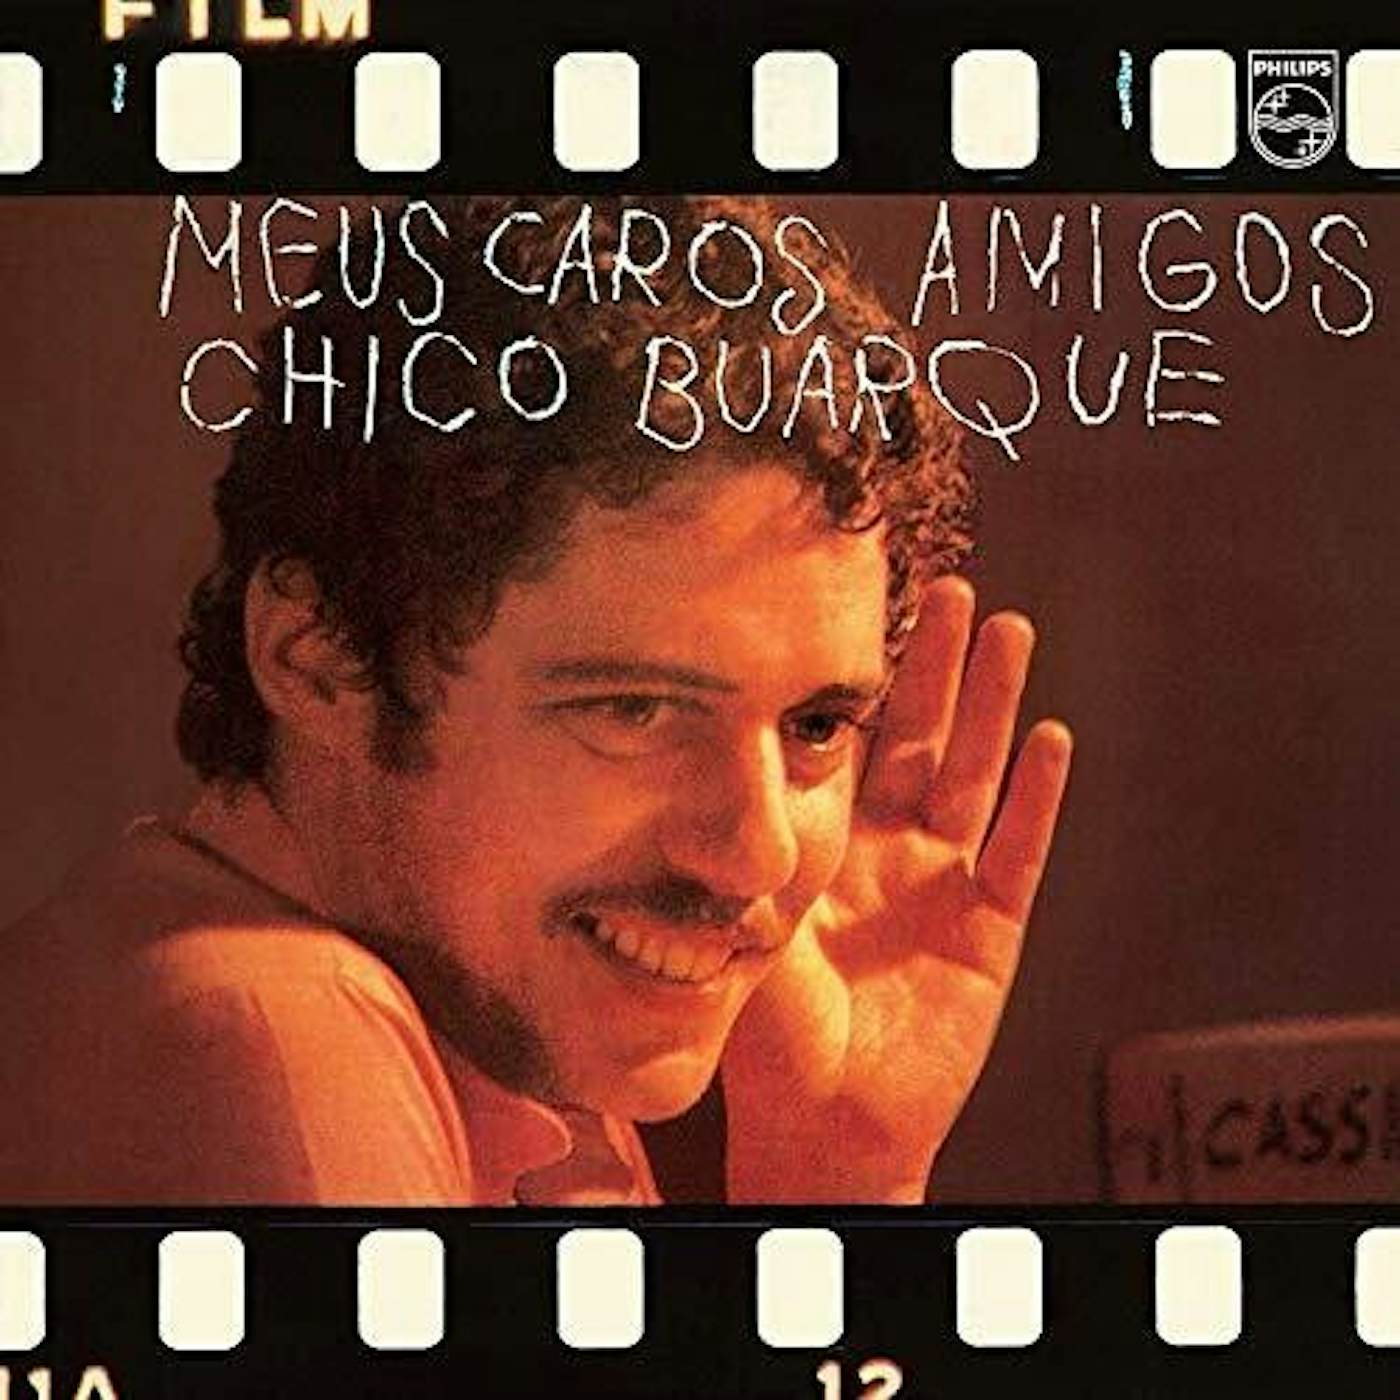 Chico Buarque Meus Caros Amigos Vinyl Record